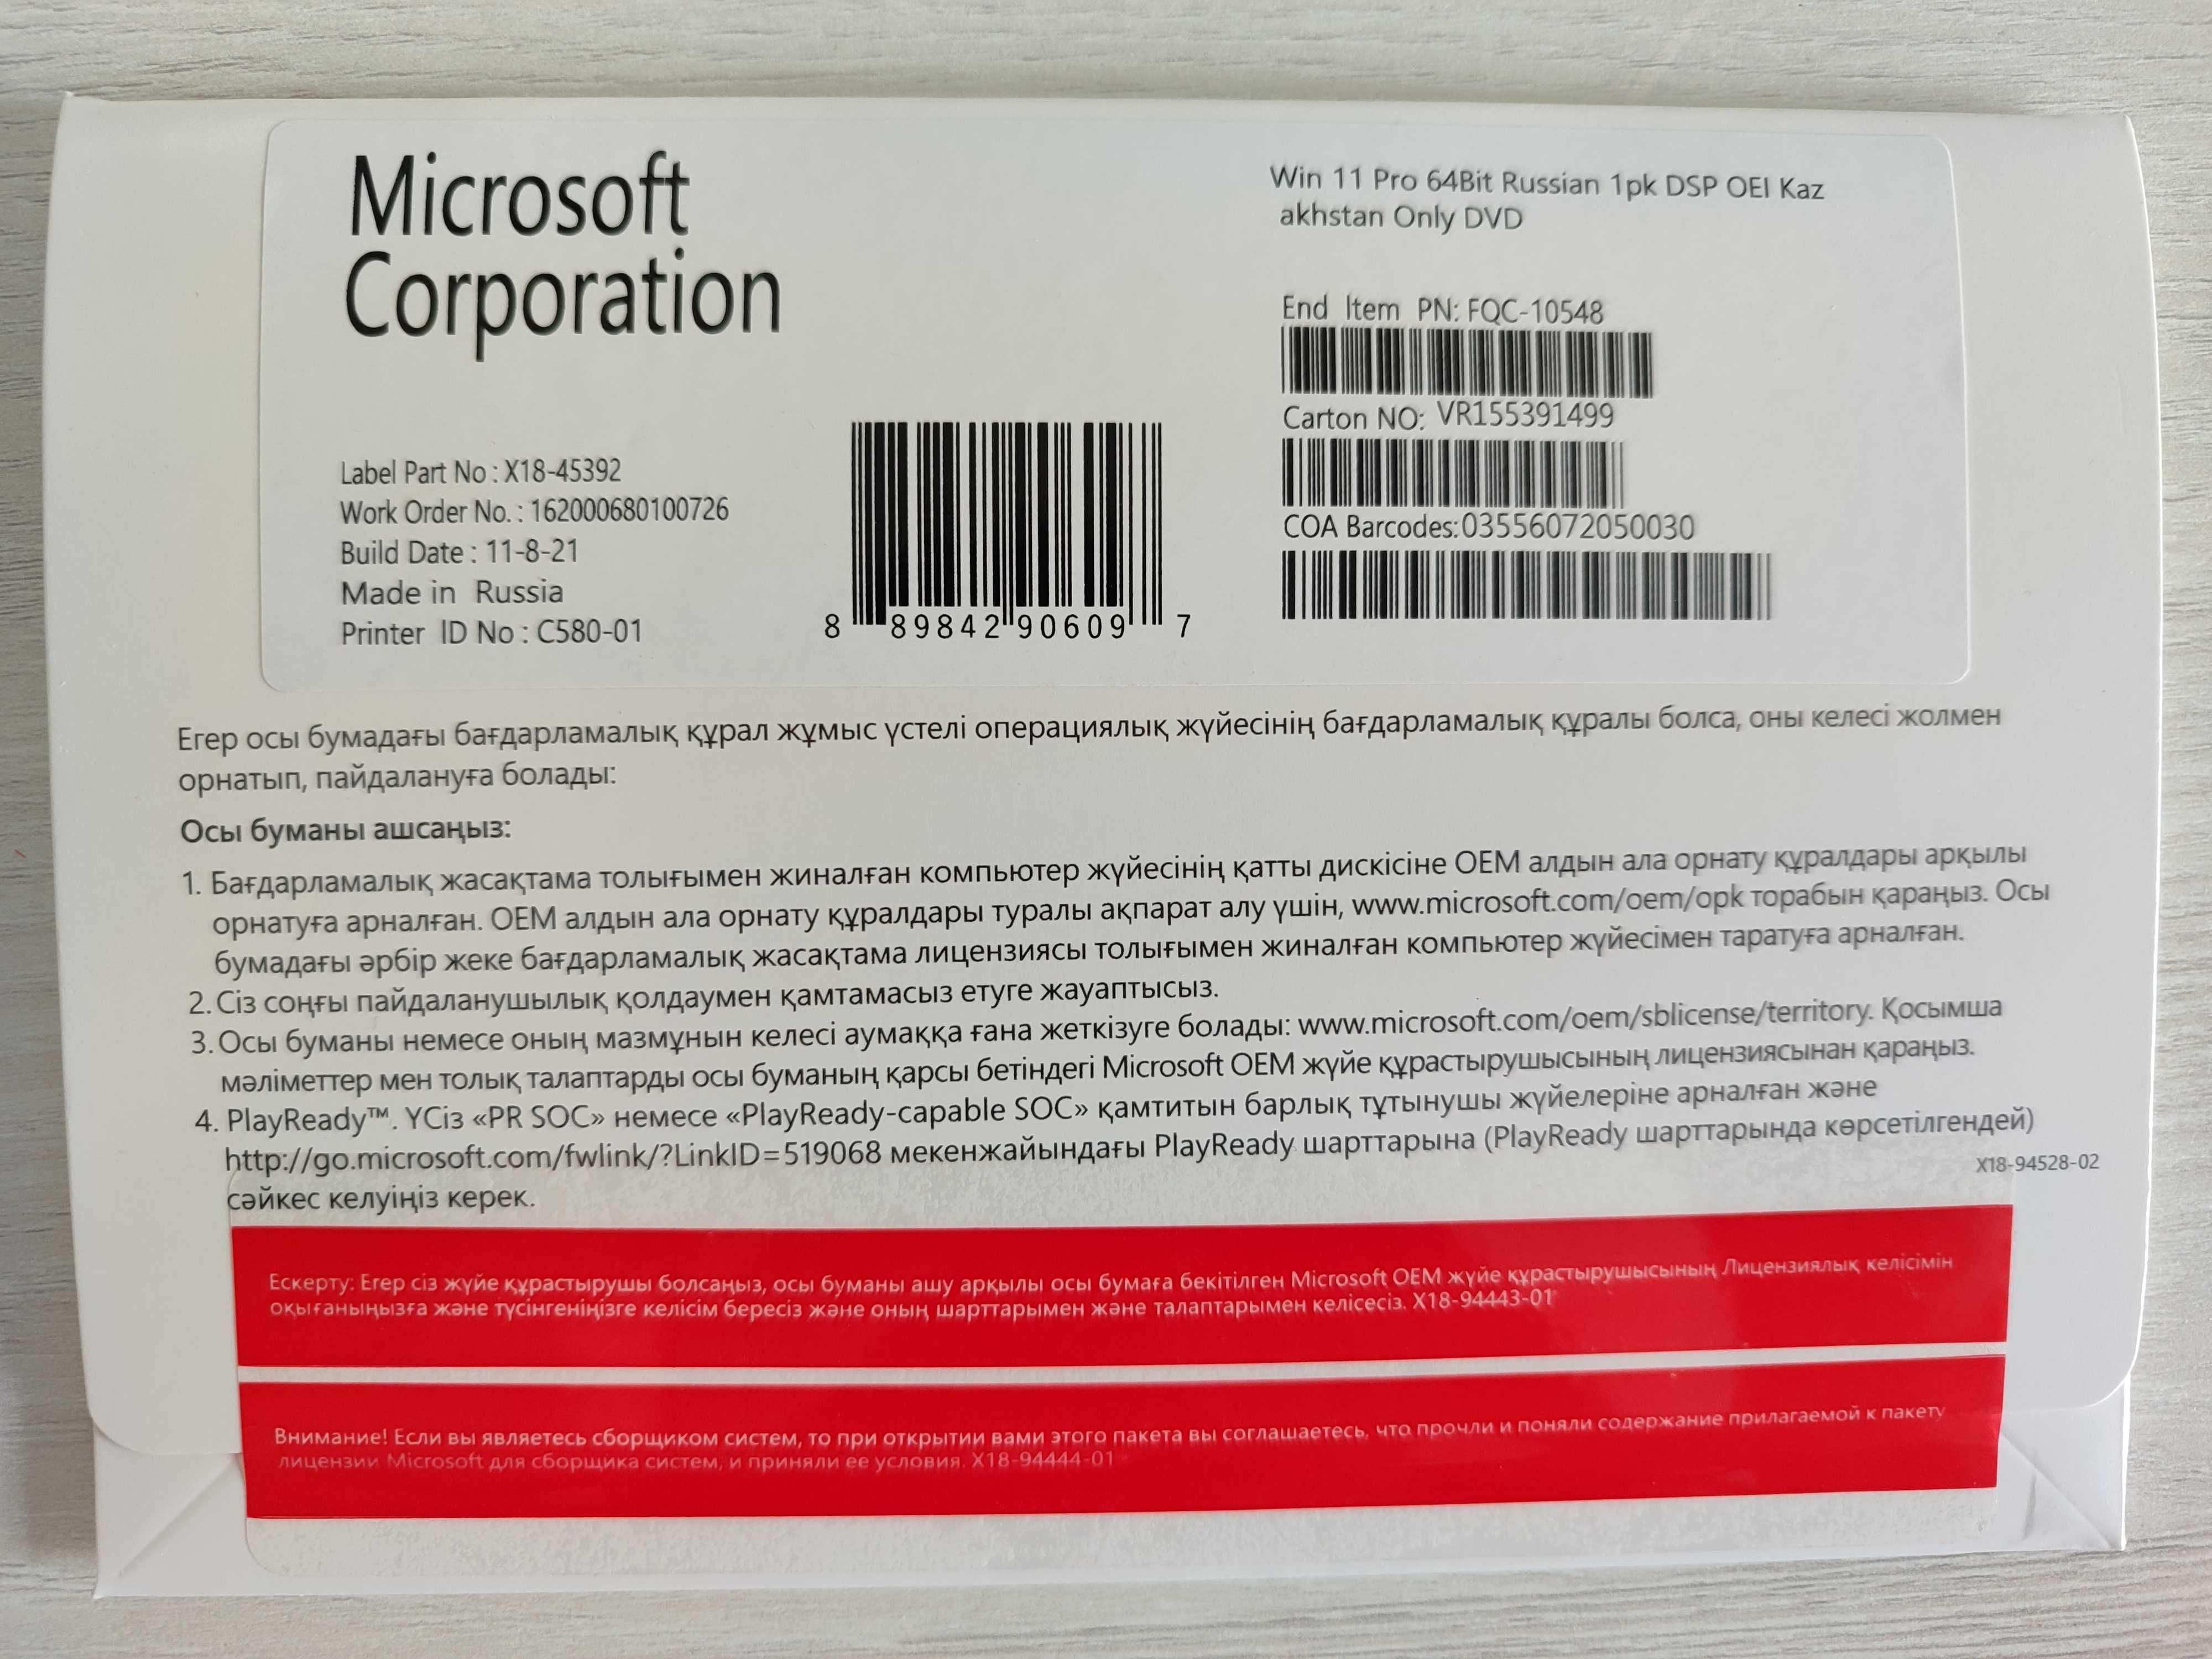 Windows 10 Pro OEM конверт для казахстана с официальной диской